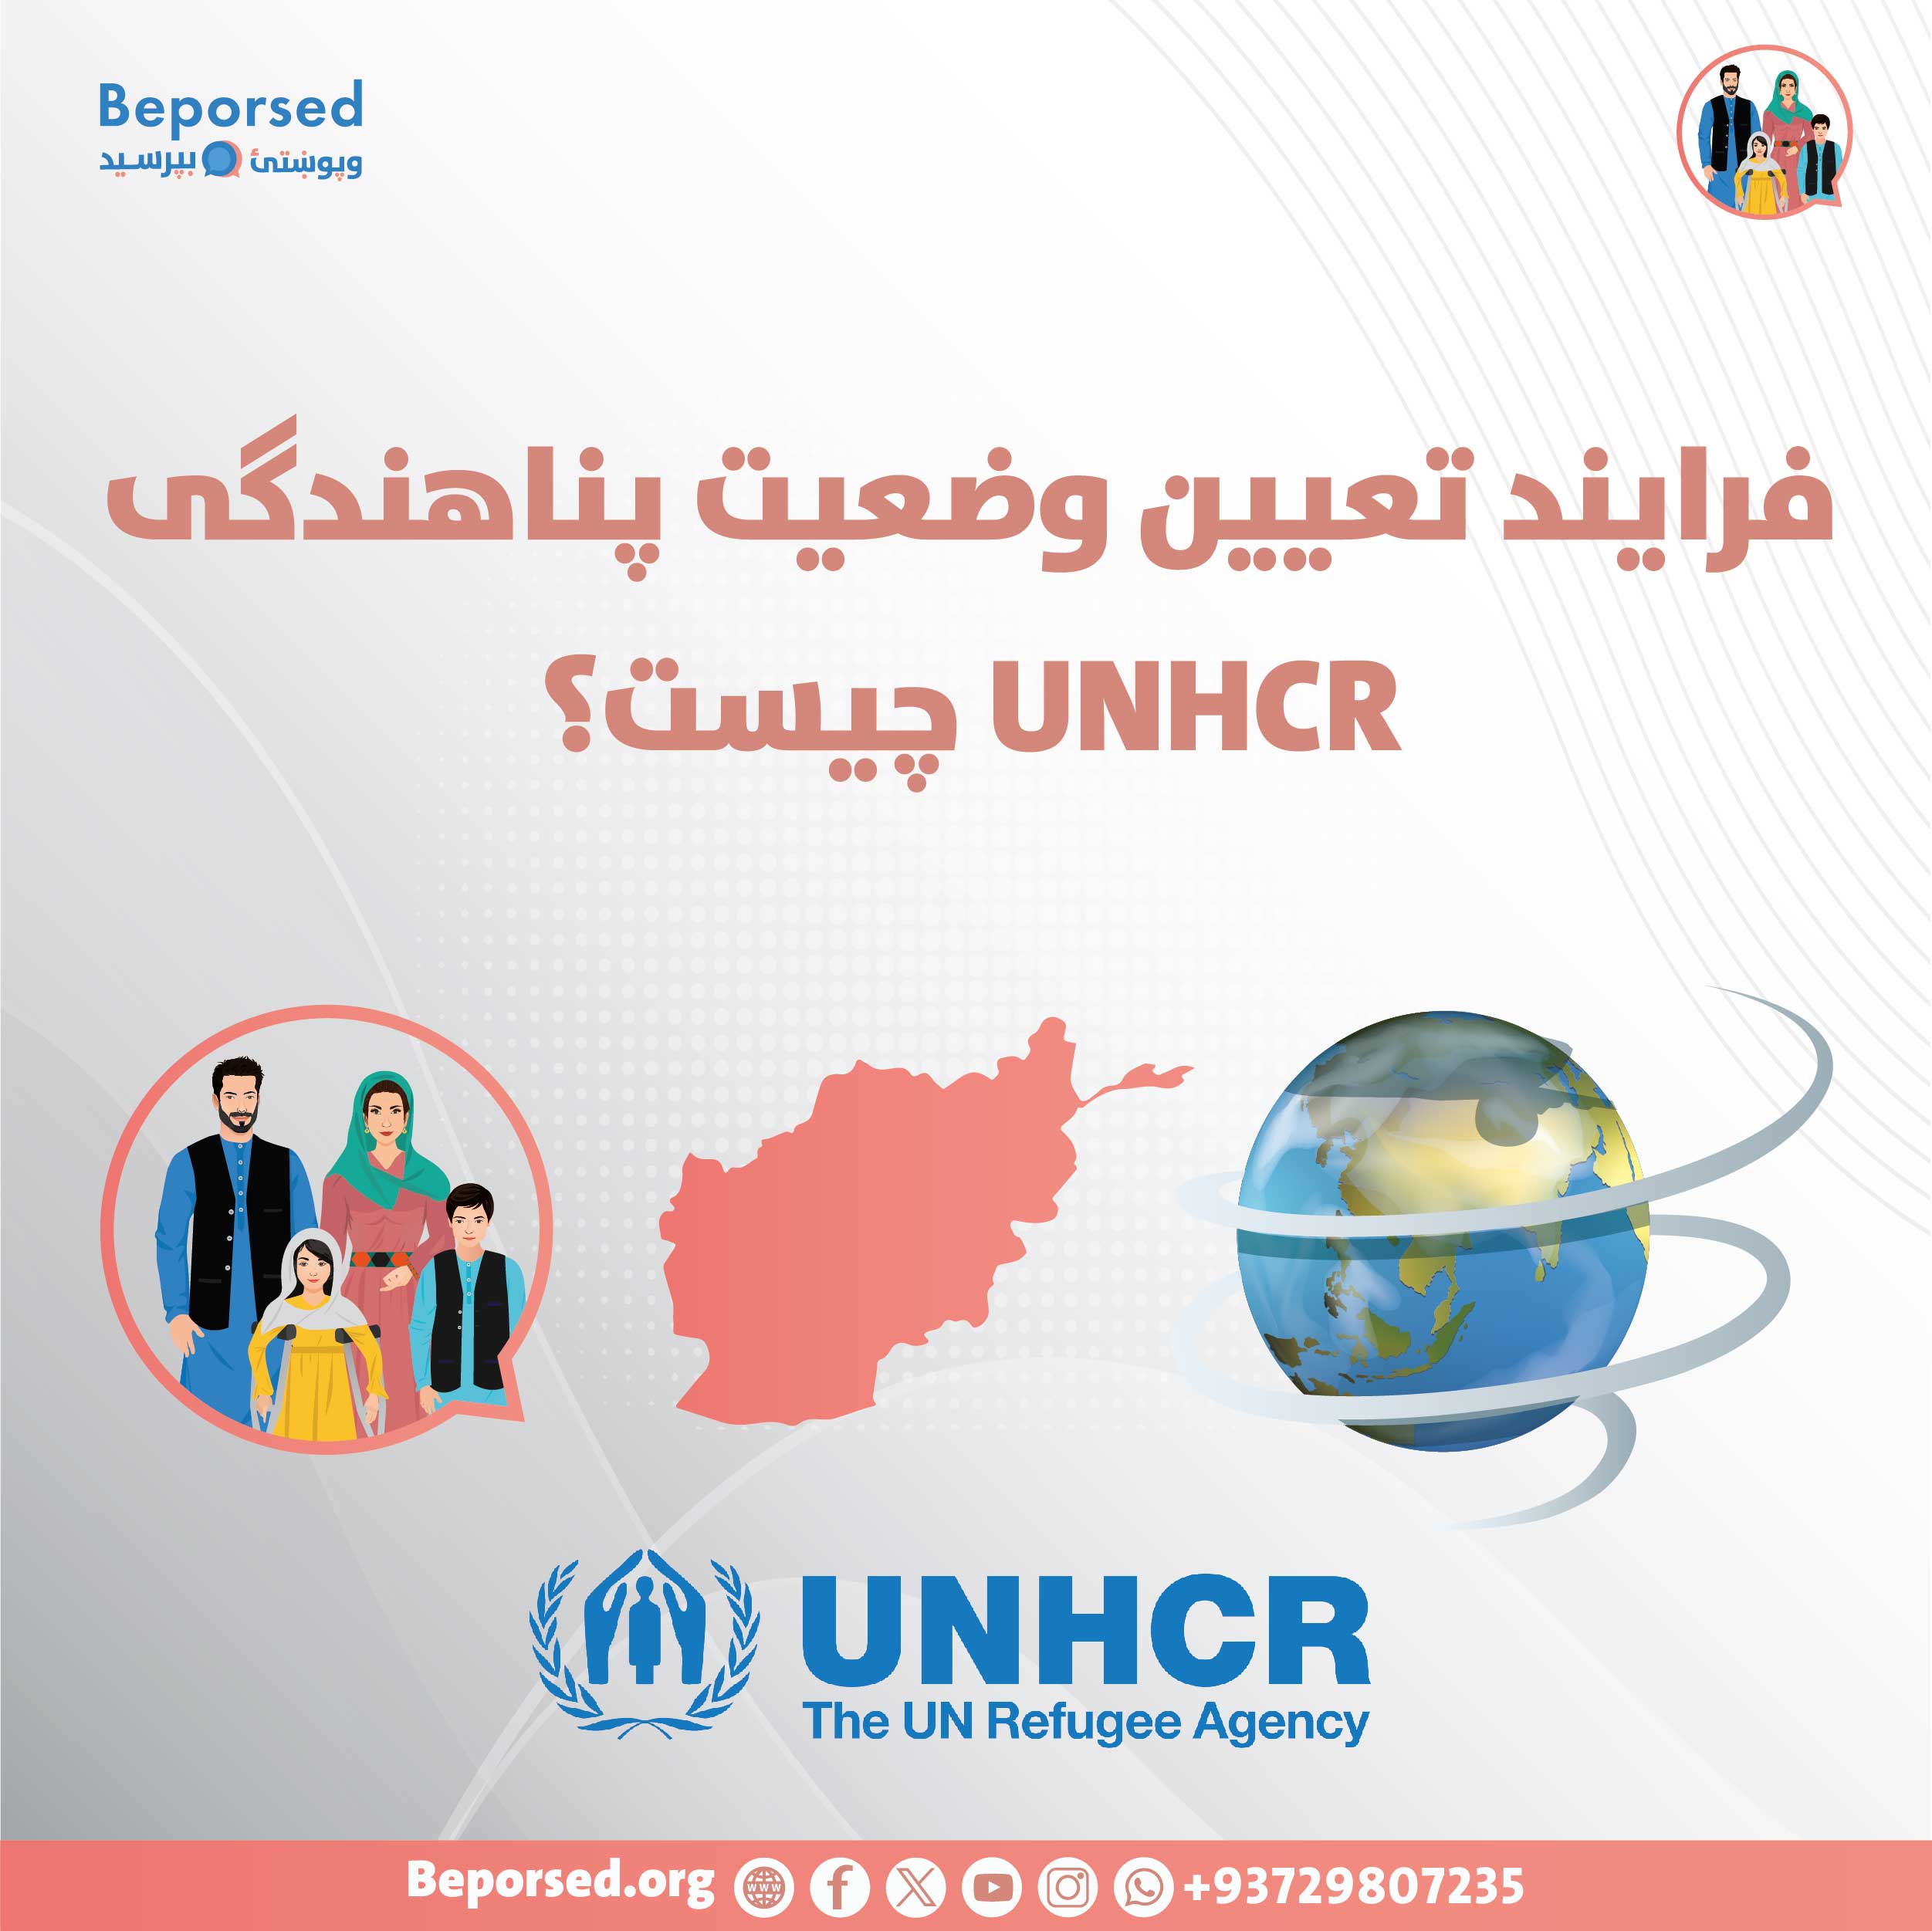 فرایند تعیین وضعیت پناهندگی UNHCR چیست؟-01.jpg